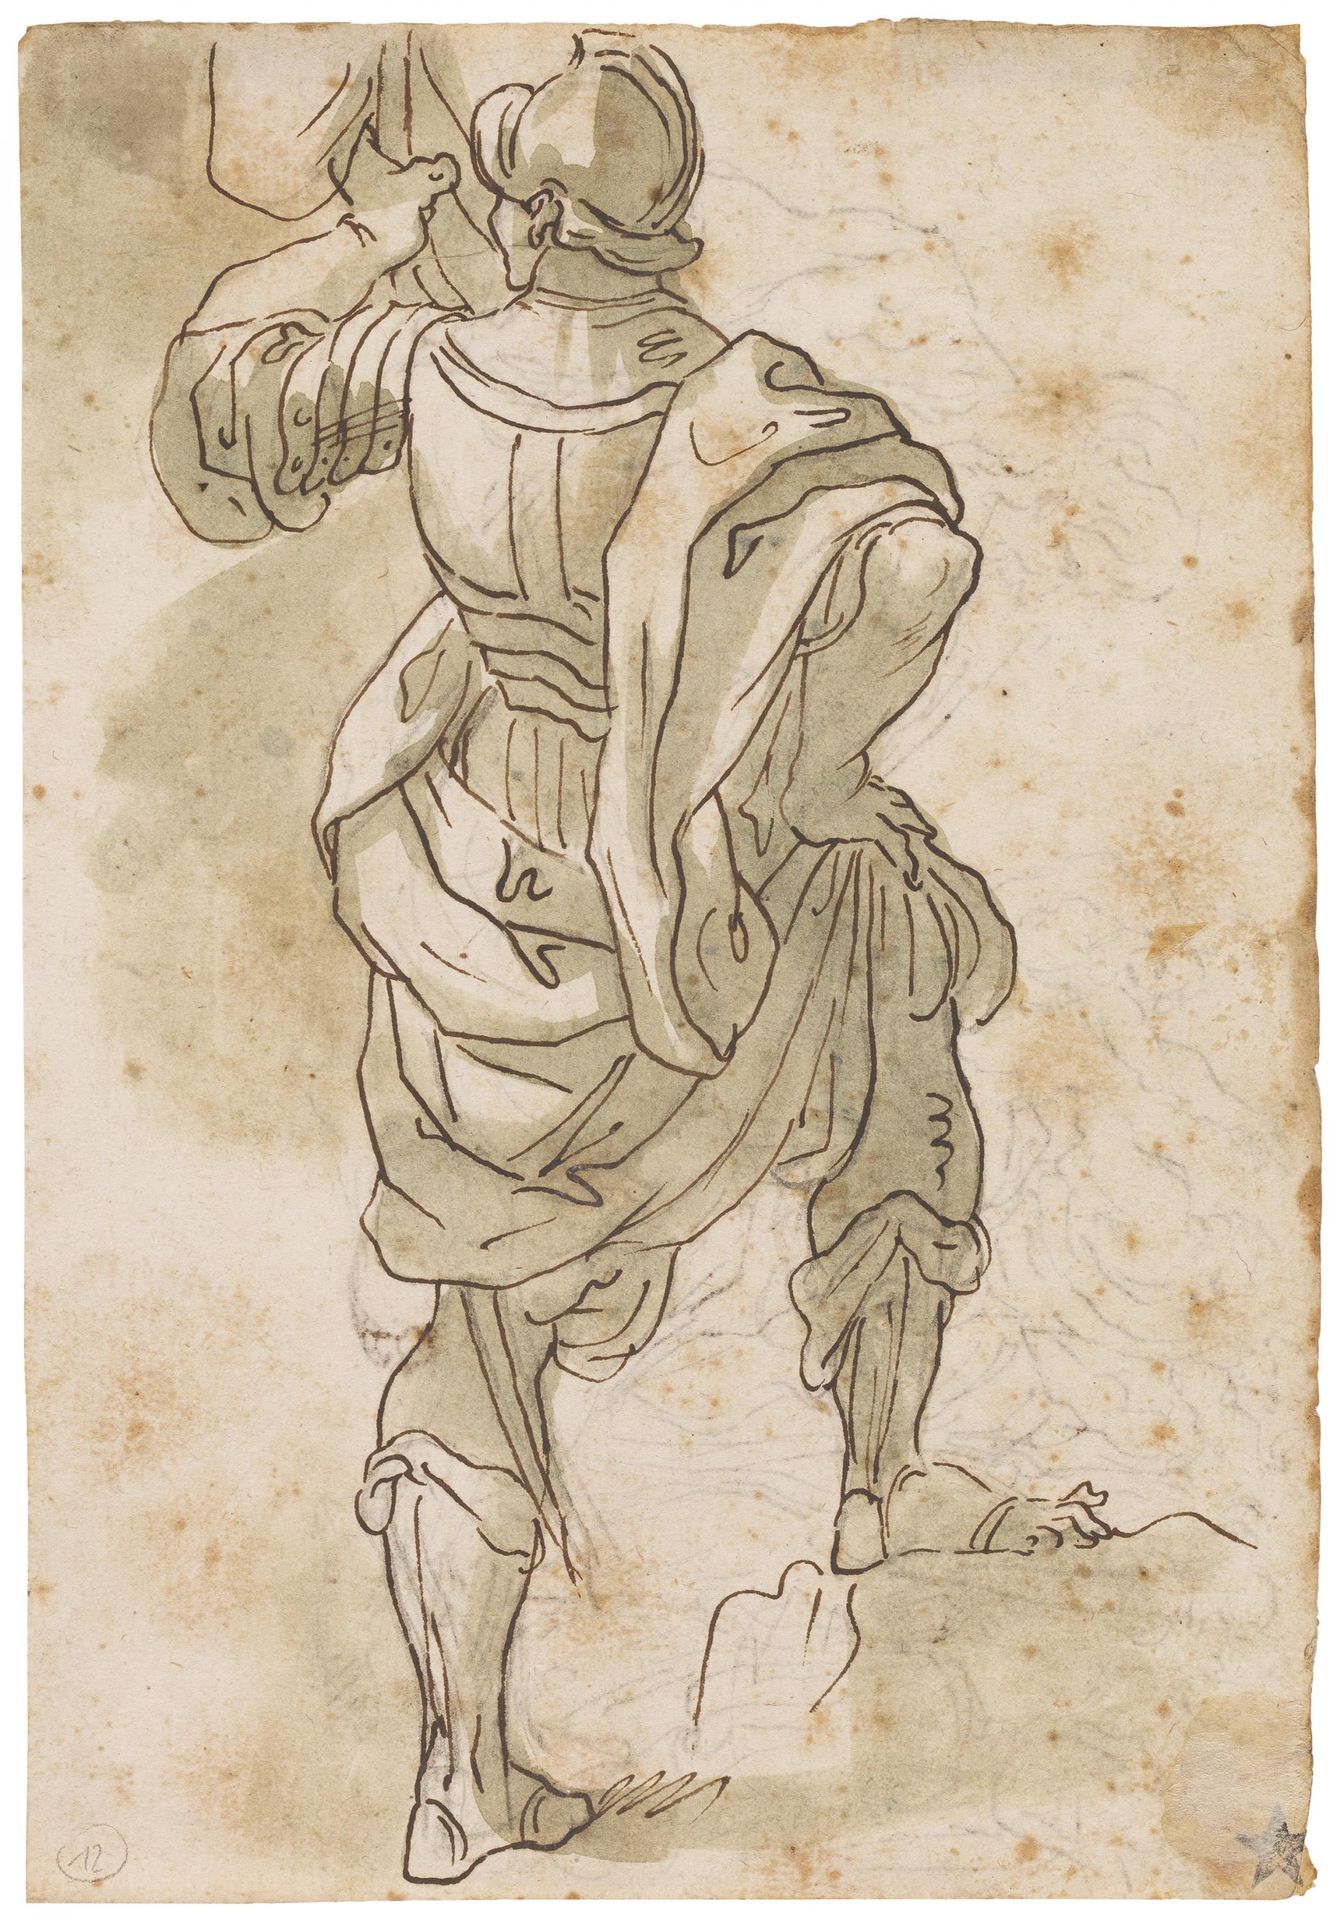 ITALIENISCHE SCHULE 意大利学校
16/17世纪
标题： 旗手。
Verso: Poseidon.
技术： 纸上墨水笔。
尺寸： 21 x 1&hellip;